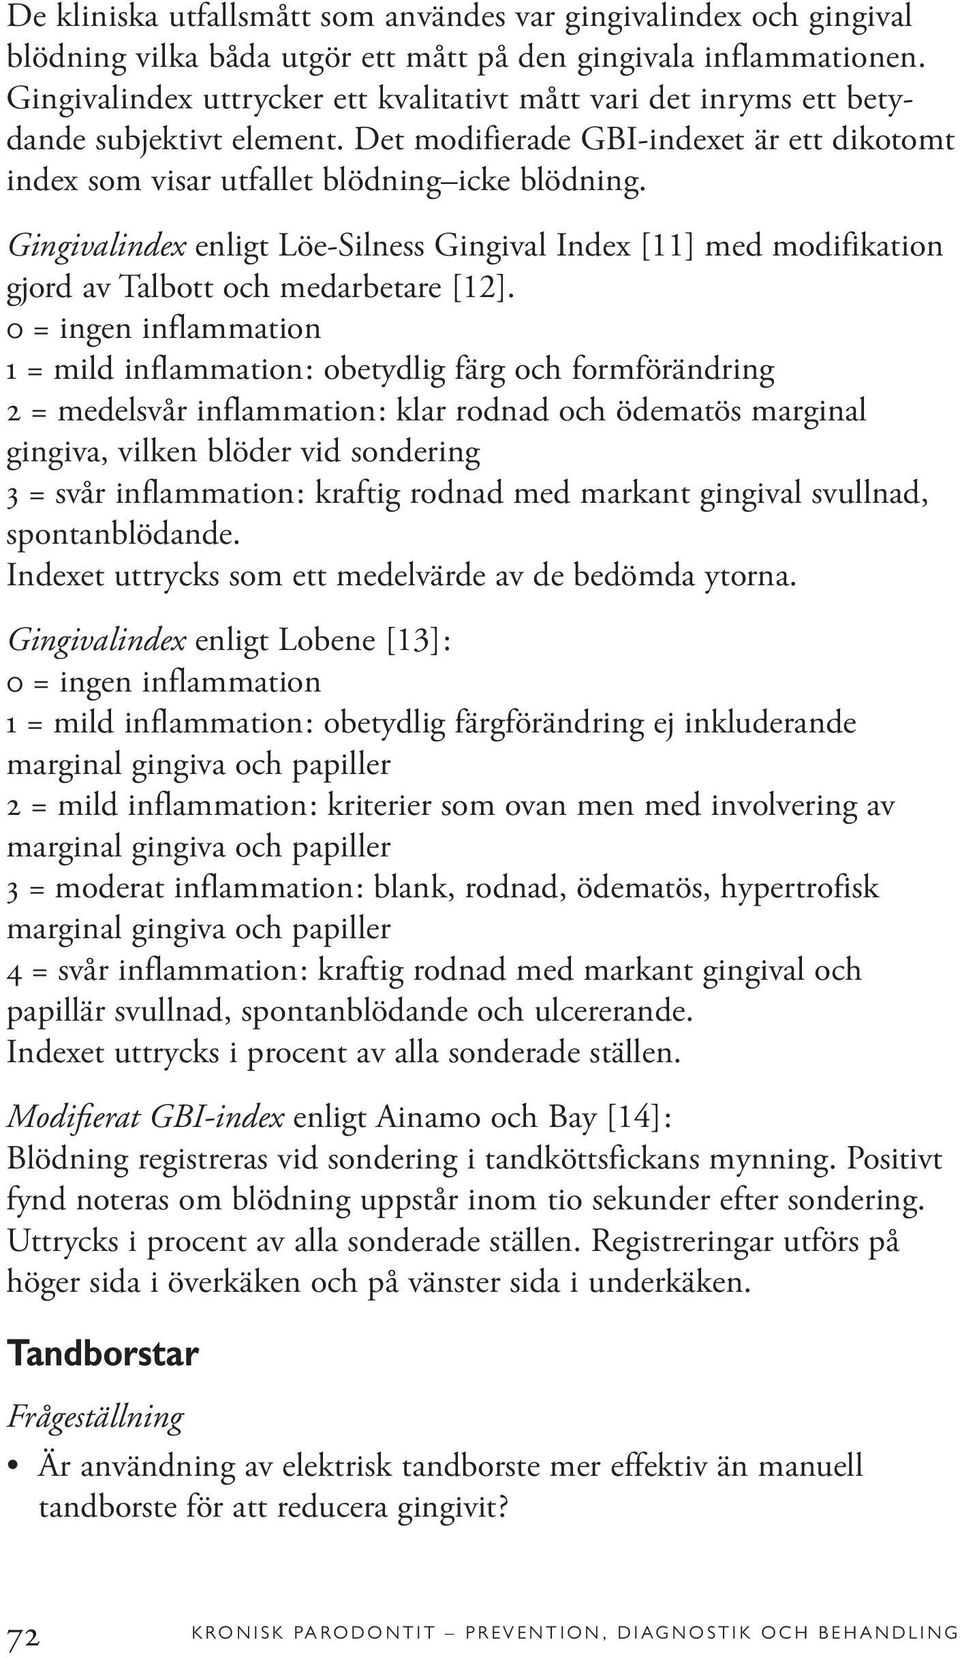 Gingivalindex enligt Löe-Silness Gingival Index [11] med modifikation gjord av Talbott och medarbetare [12].